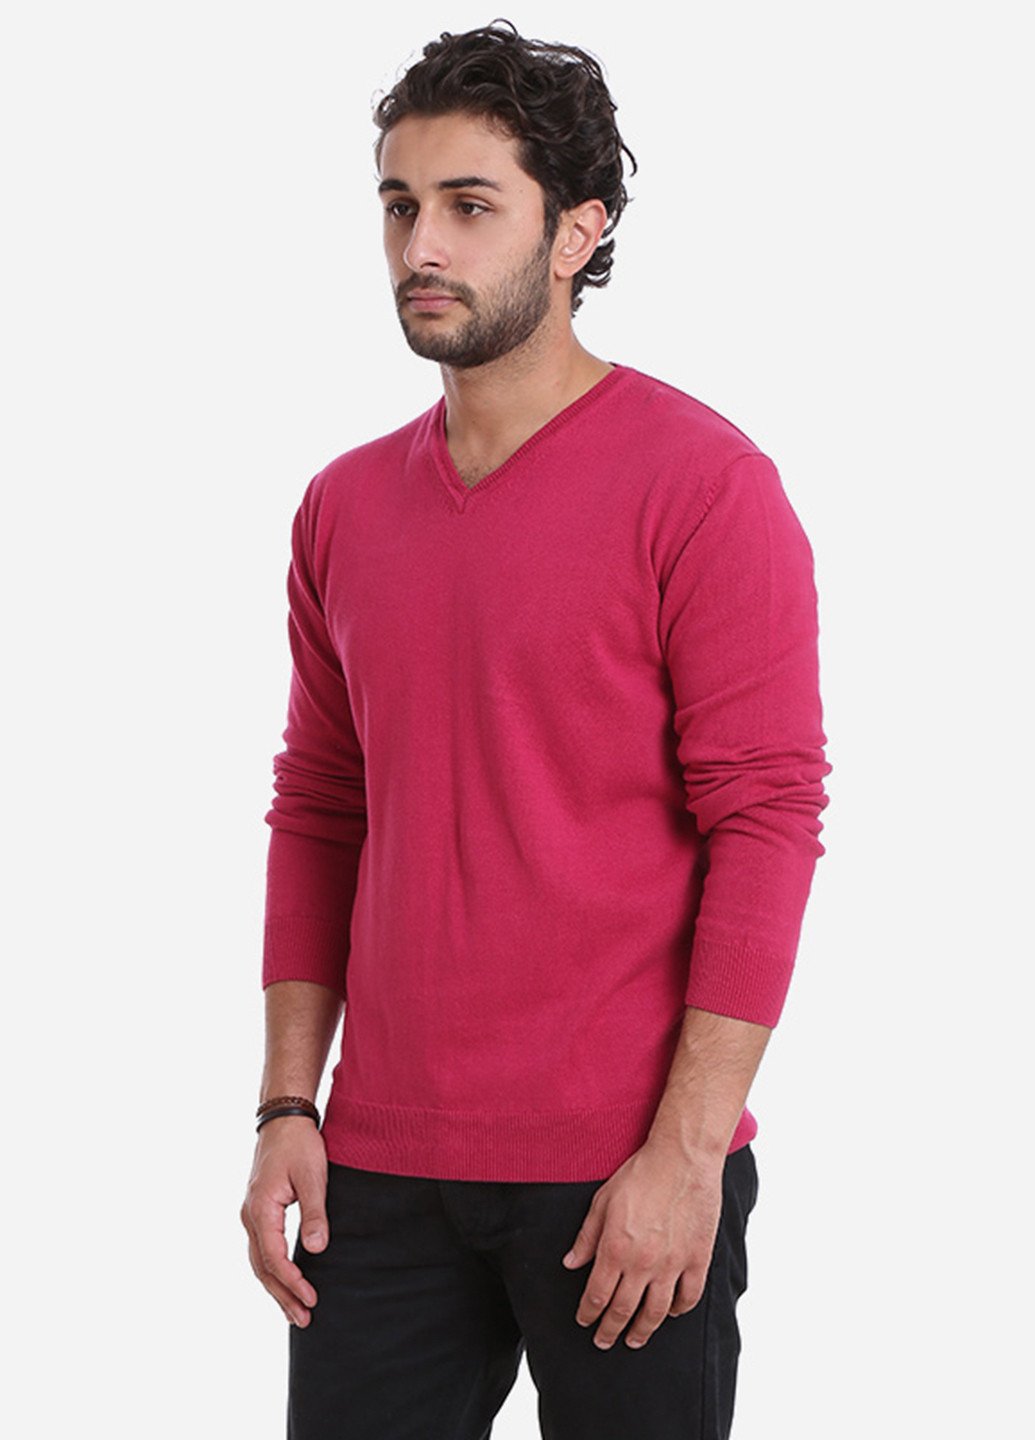 Фуксиновый демисезонный пуловер пуловер Яavin